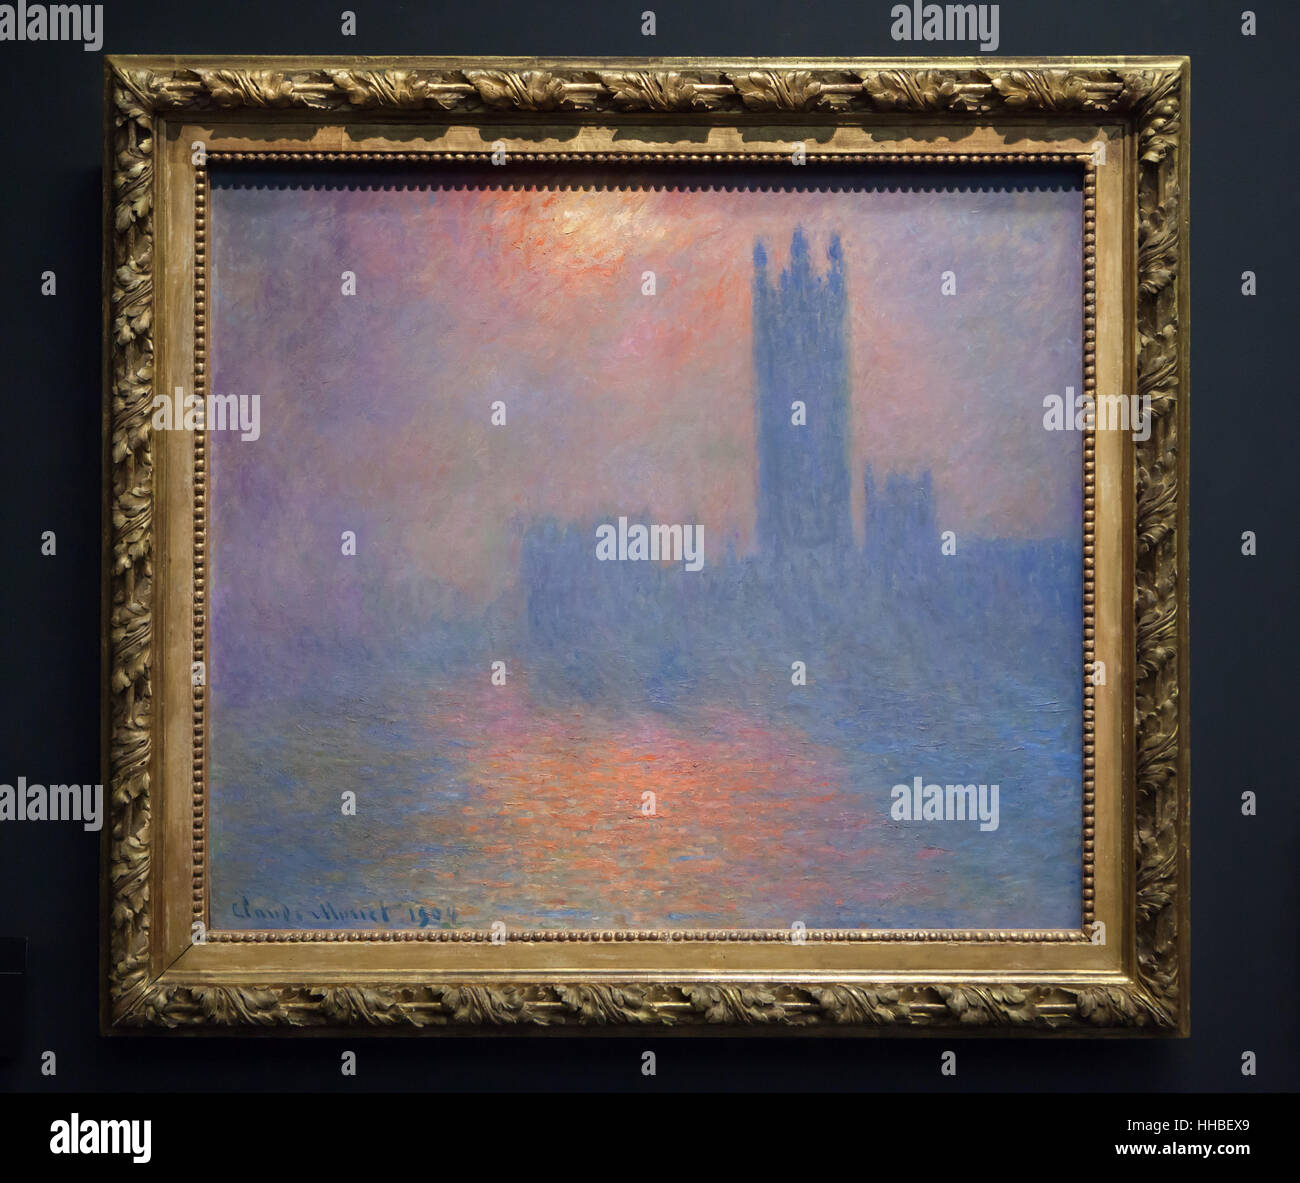 Peinture de la série parlements de Londres (Parlement) par Claude Monet peintre impressionniste français affiché dans le musée d'Orsay à Paris, France. Le titre complet de l'oeuvre : Les Maisons du Parlement, Londres, Sun Breaking through the fog (1904). Banque D'Images